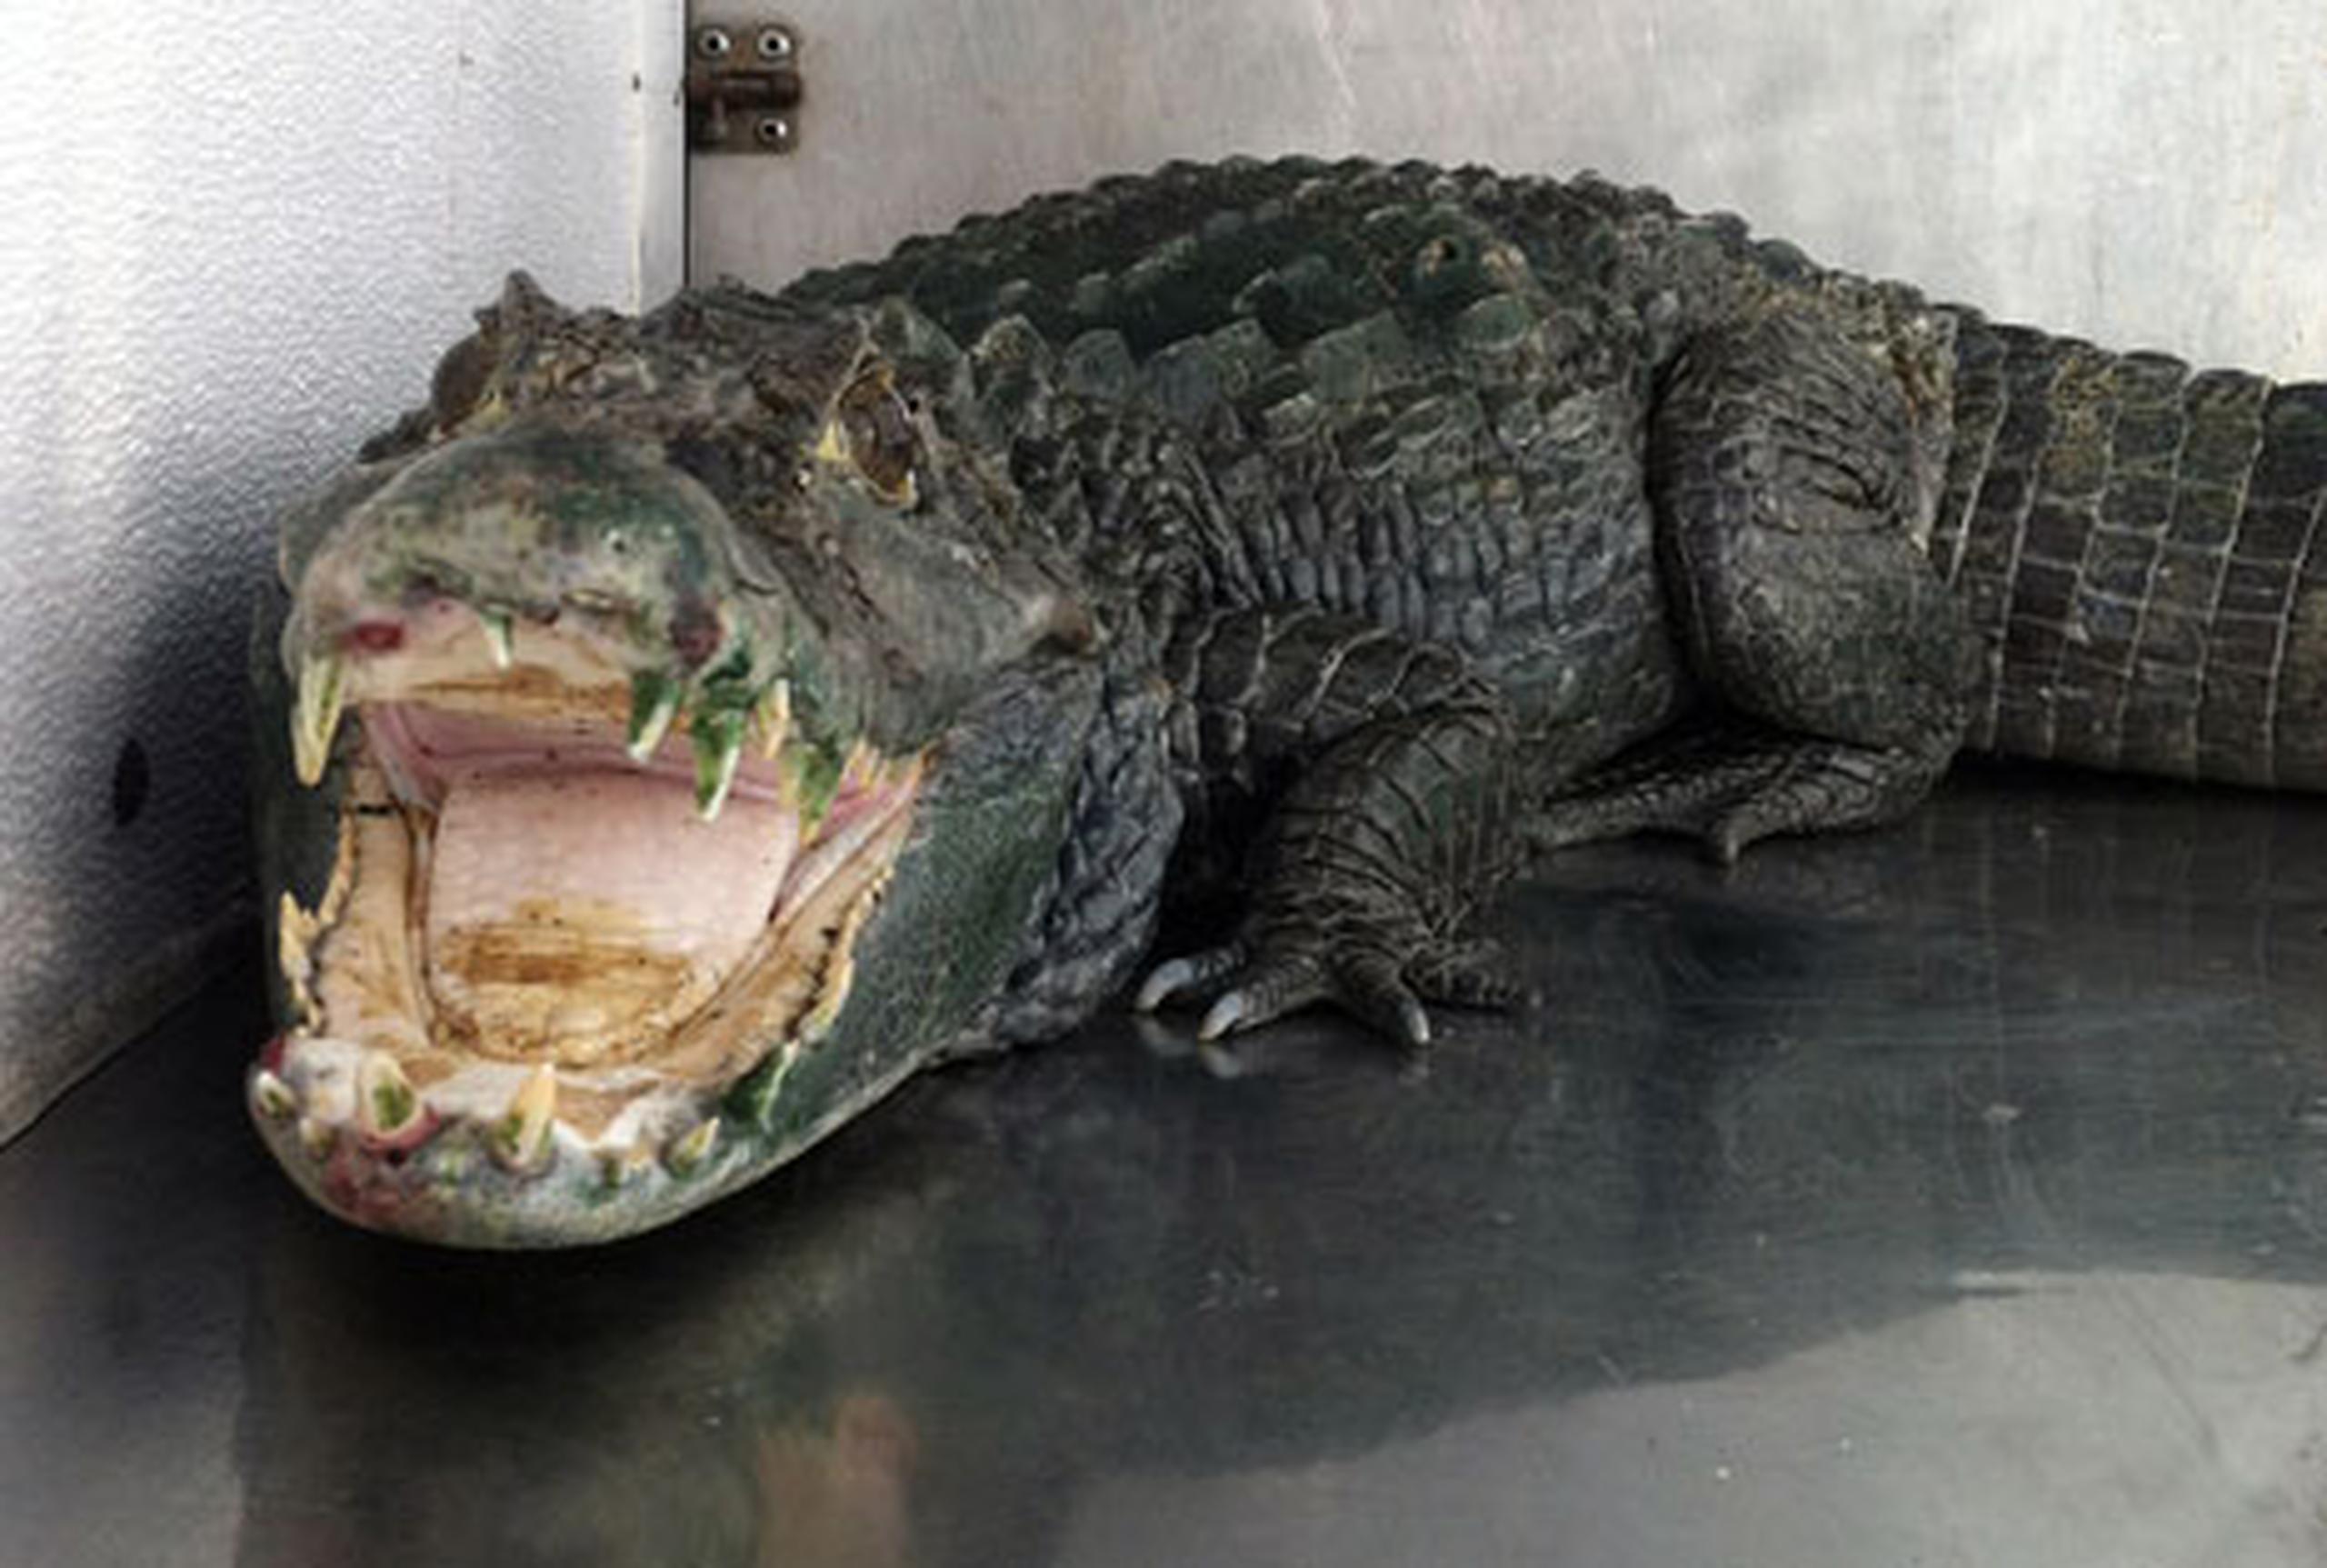 Los agentes dijeron que el caimán llamado, Mr. Teeth se encuentra muy enfermo y está siendo atendido en el hospital veterinario del zoológico. (AFP)